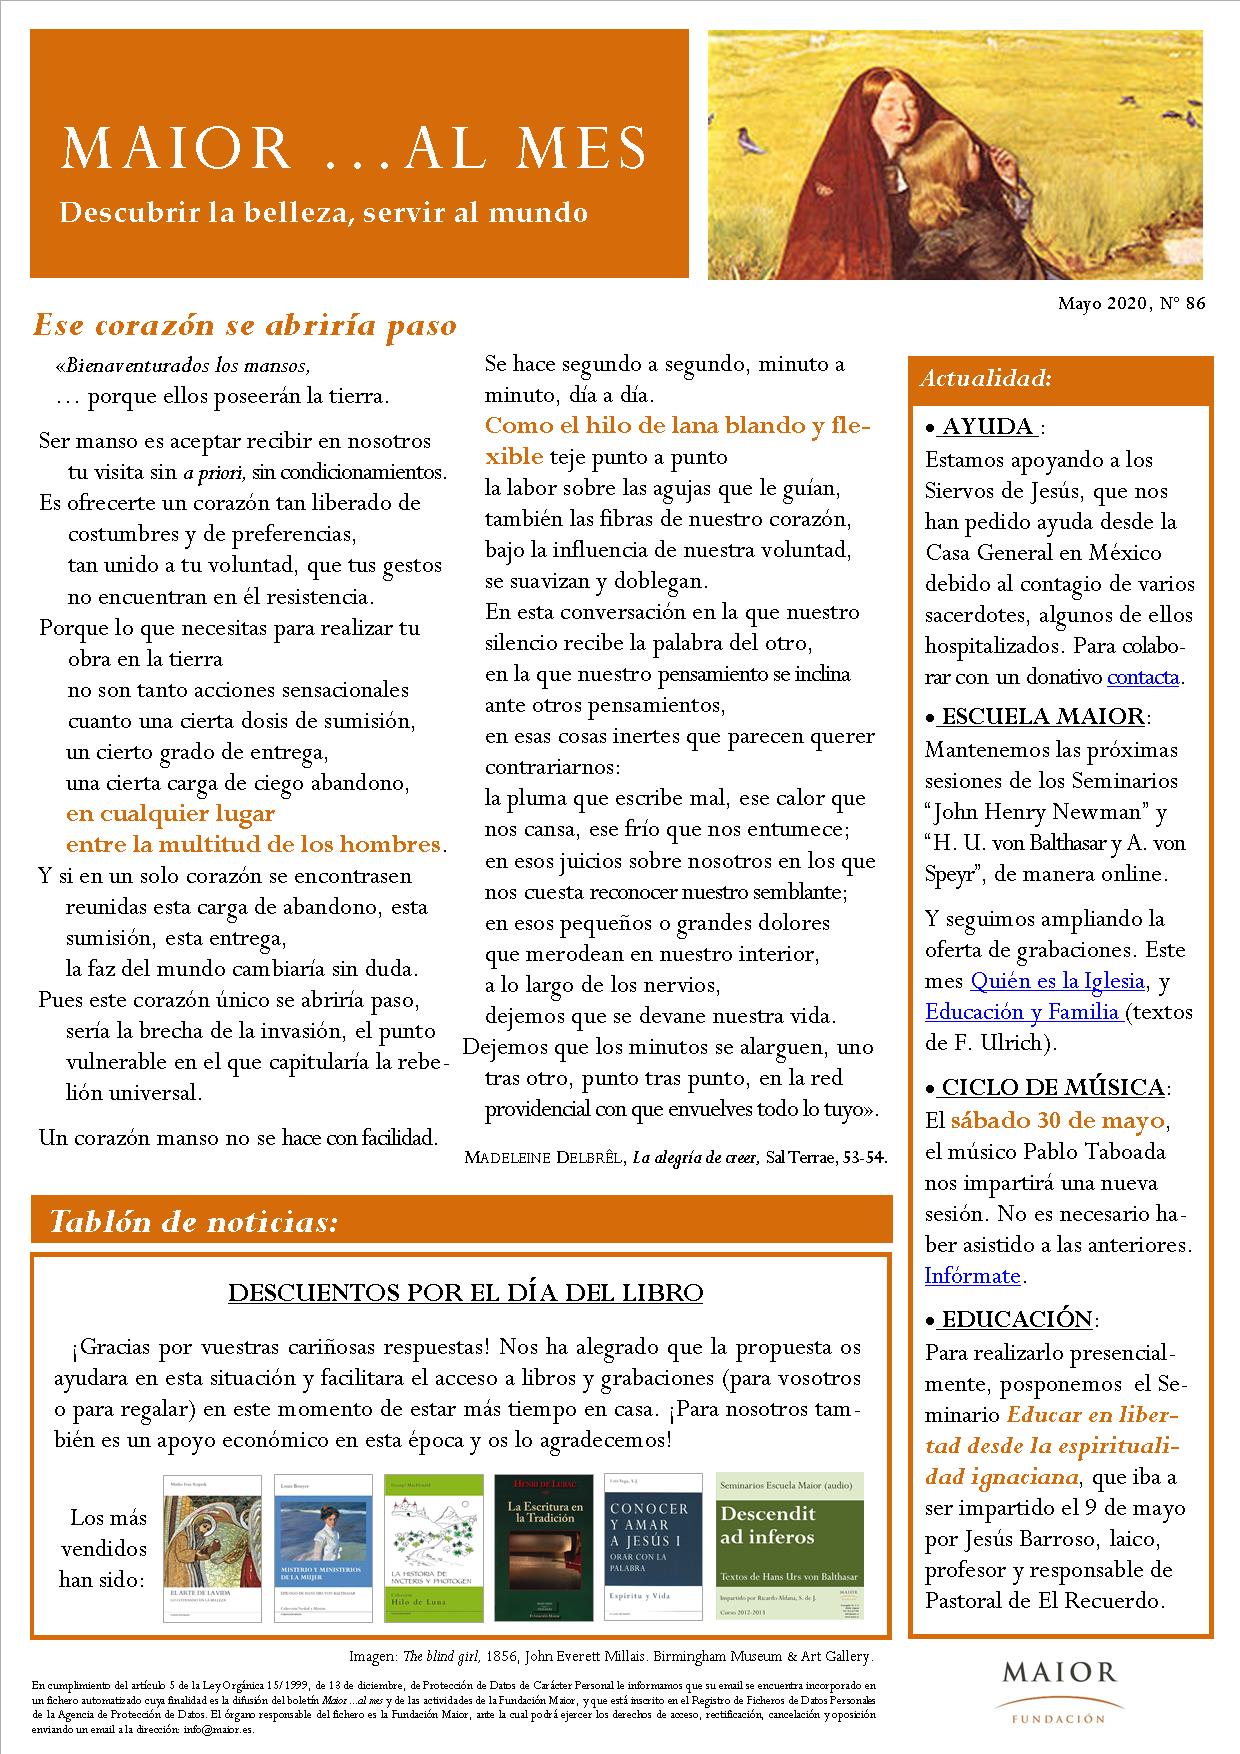 Boletín mensual de noticias y actividades de la Fundación Maior. Edición de mayo 2020